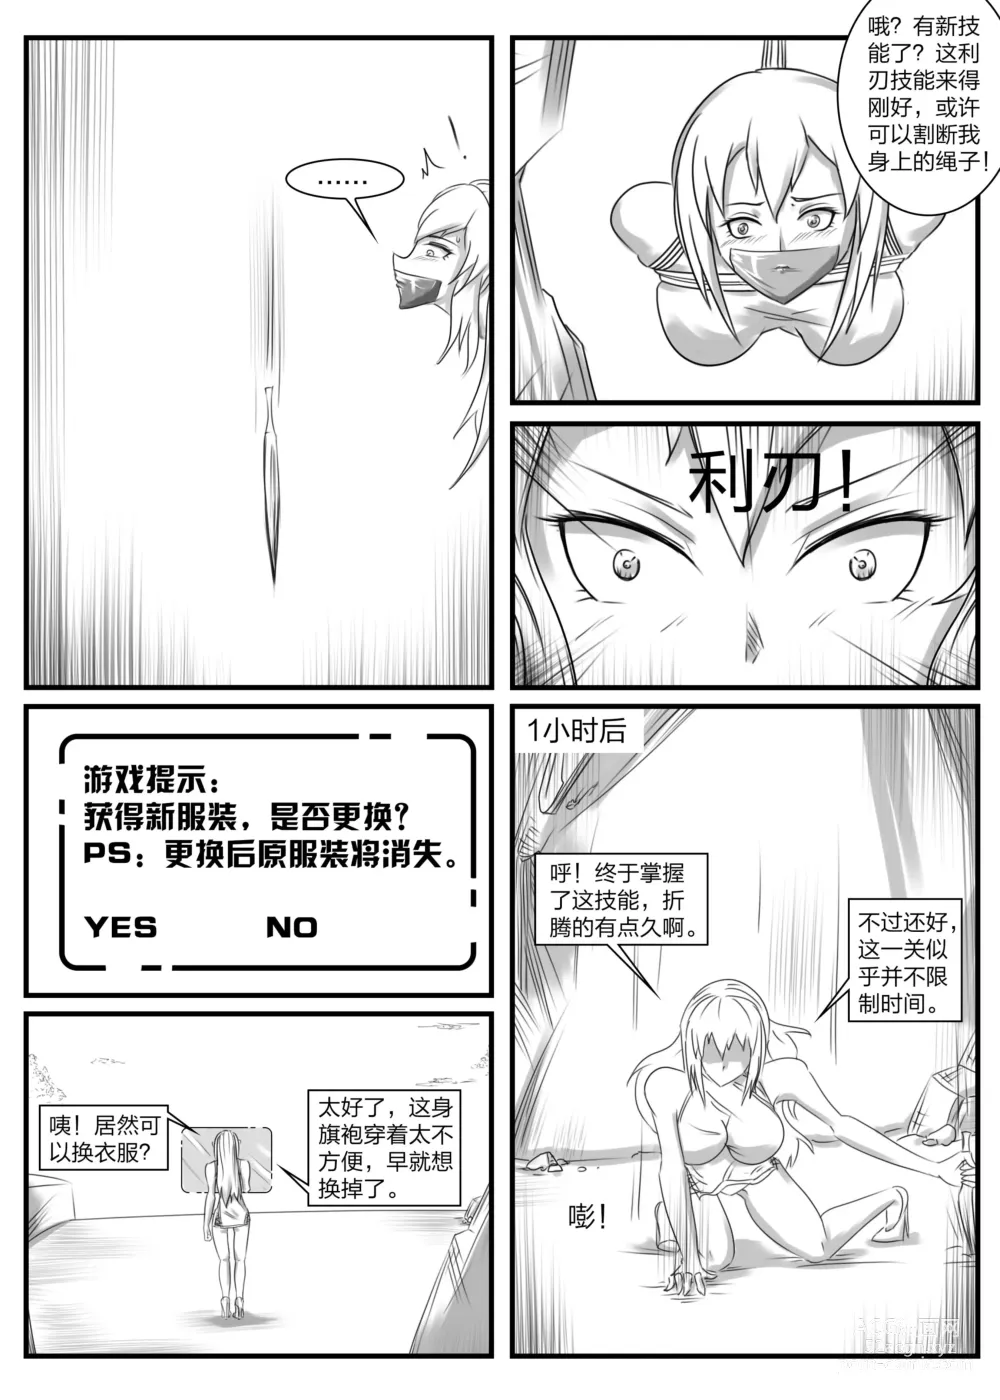 Page 9 of doujinshi 《被困游戏世界2》